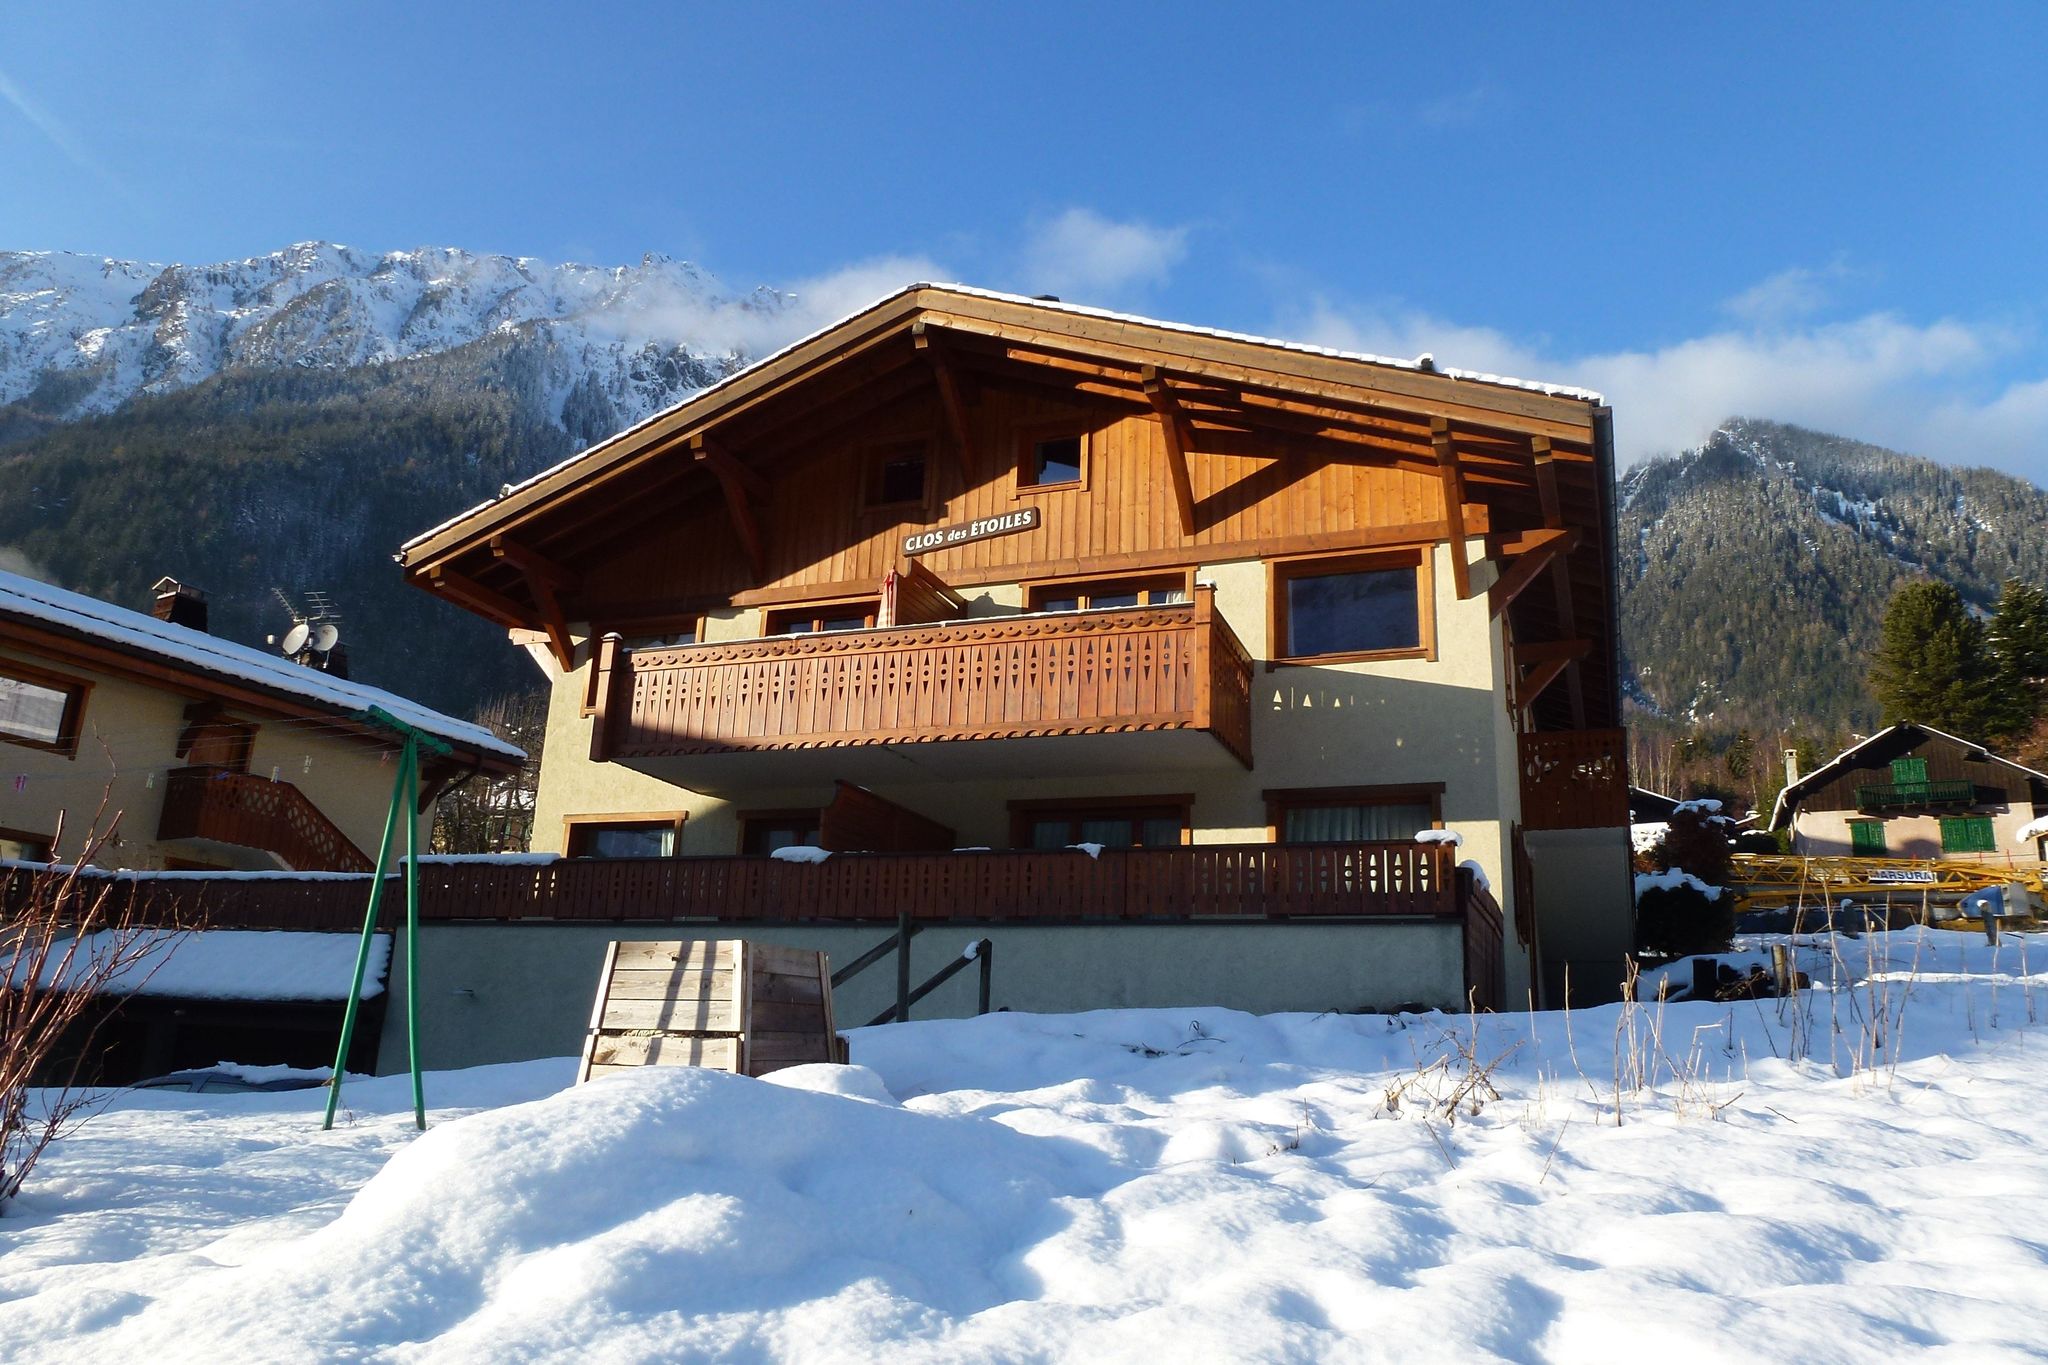 Ferienwohnung in Chamonix Frankreich nahe Chamonix Skigebiet